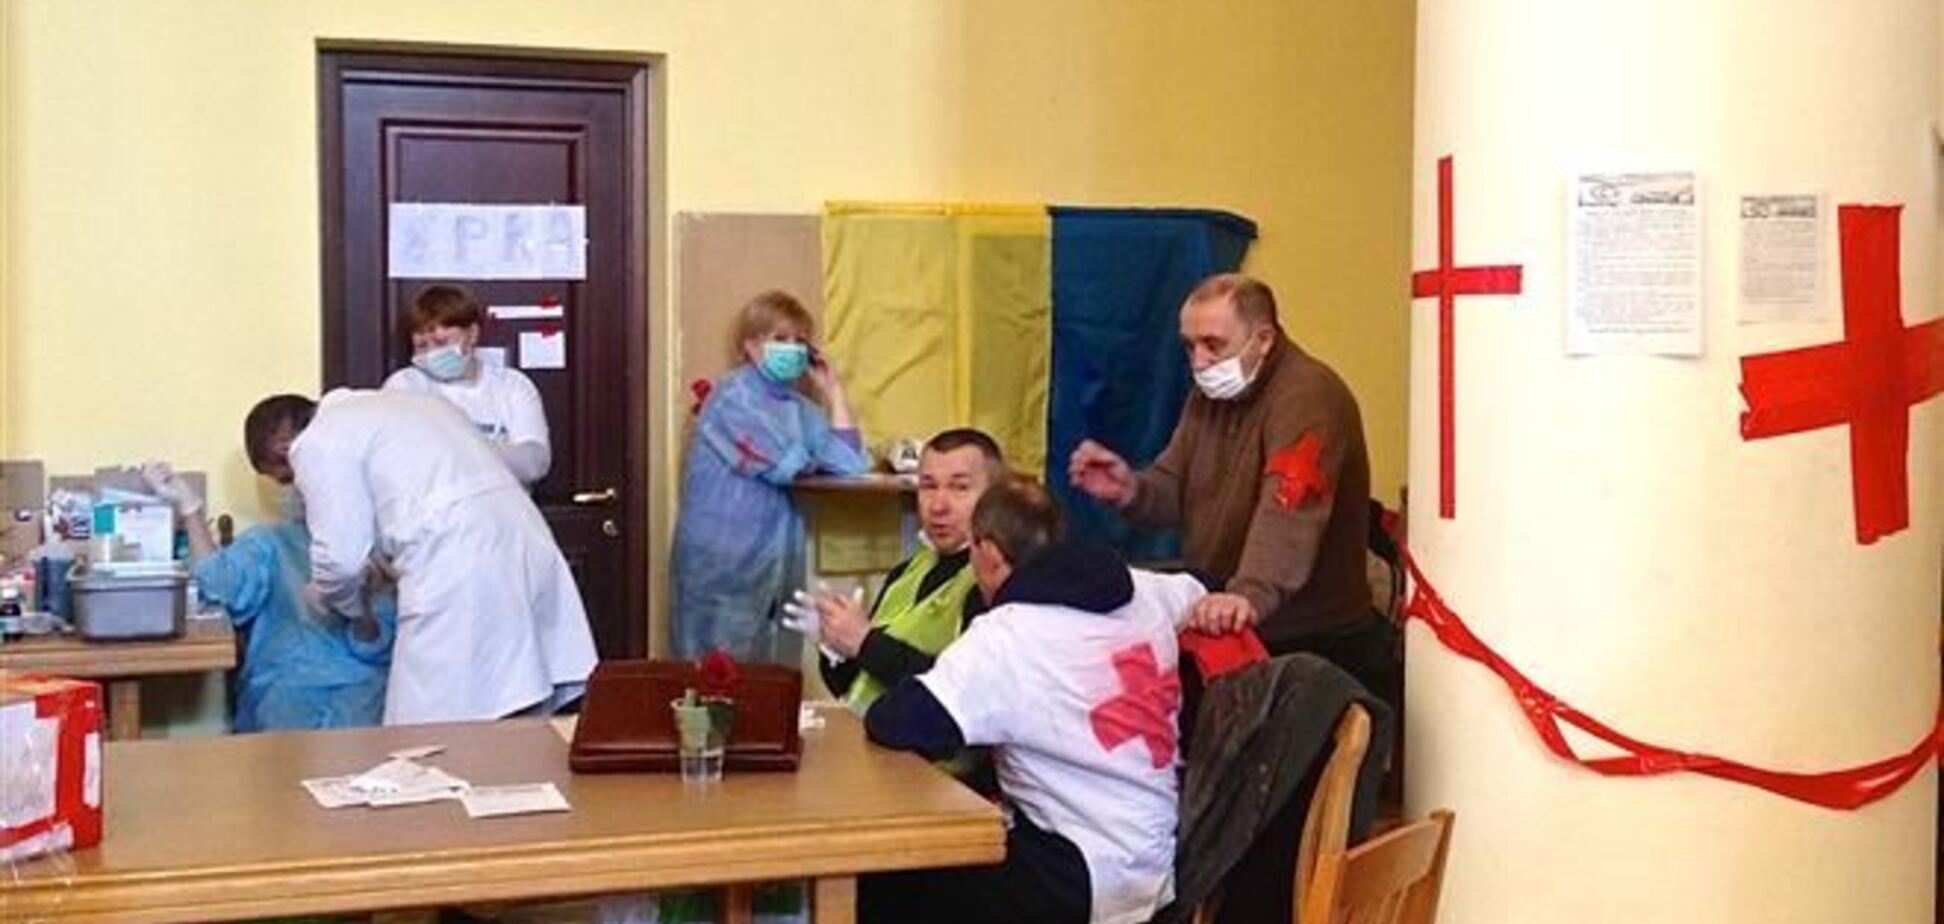 Туберкульозу на Евромайдане ні - медслужба Штабу національного опору